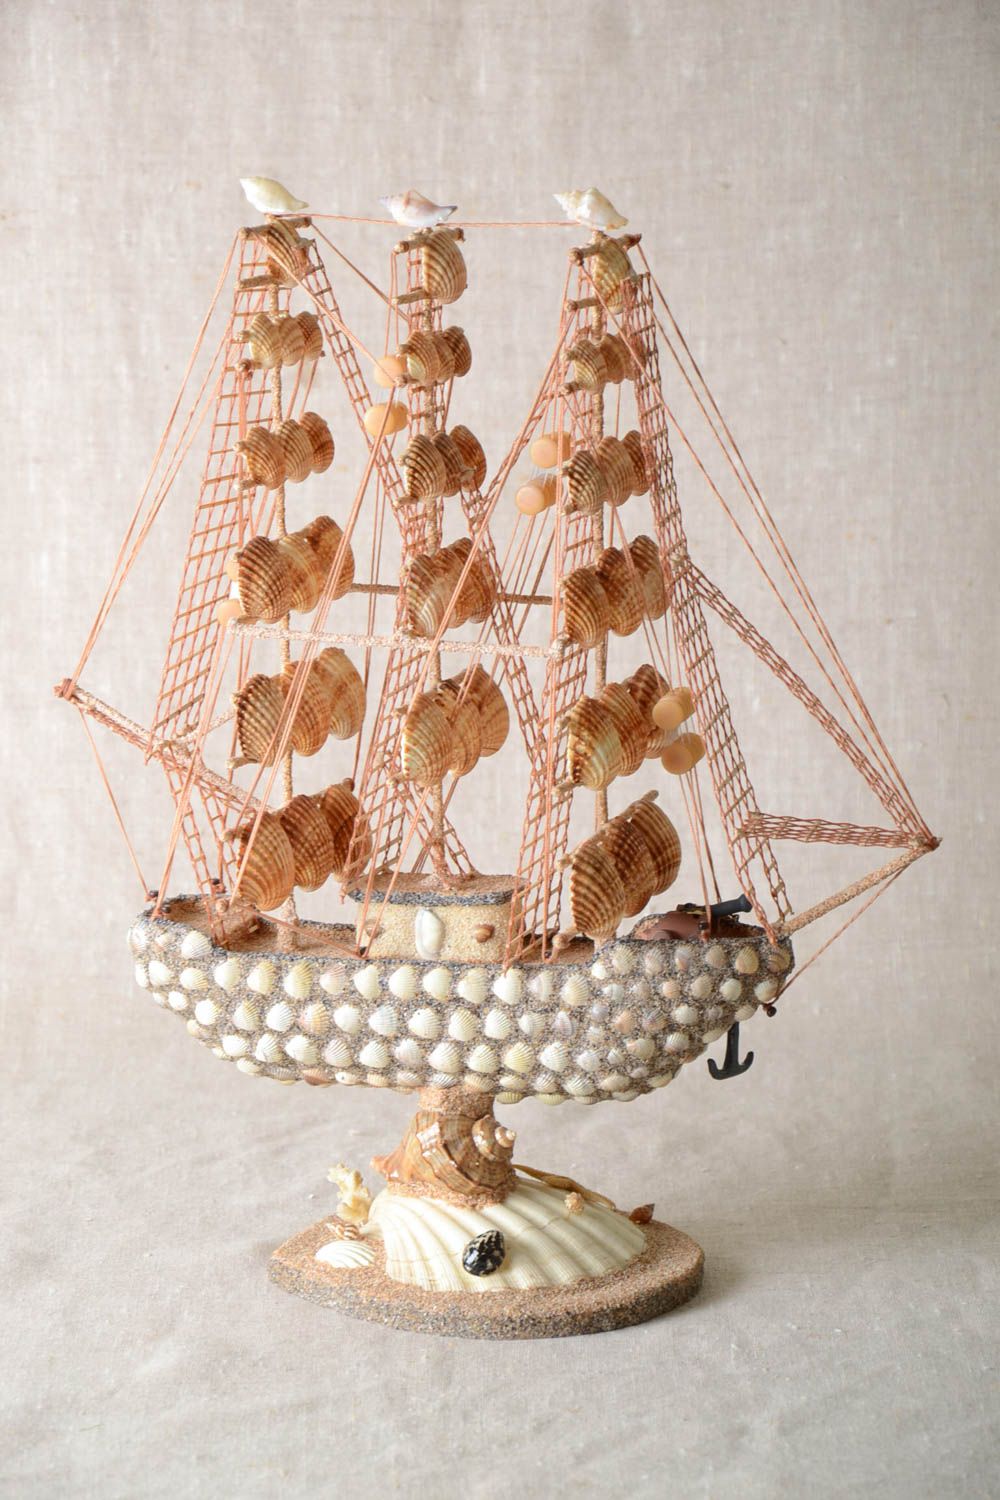 Handmade ship decor ideas ship models decoration for home ship souvenir photo 2